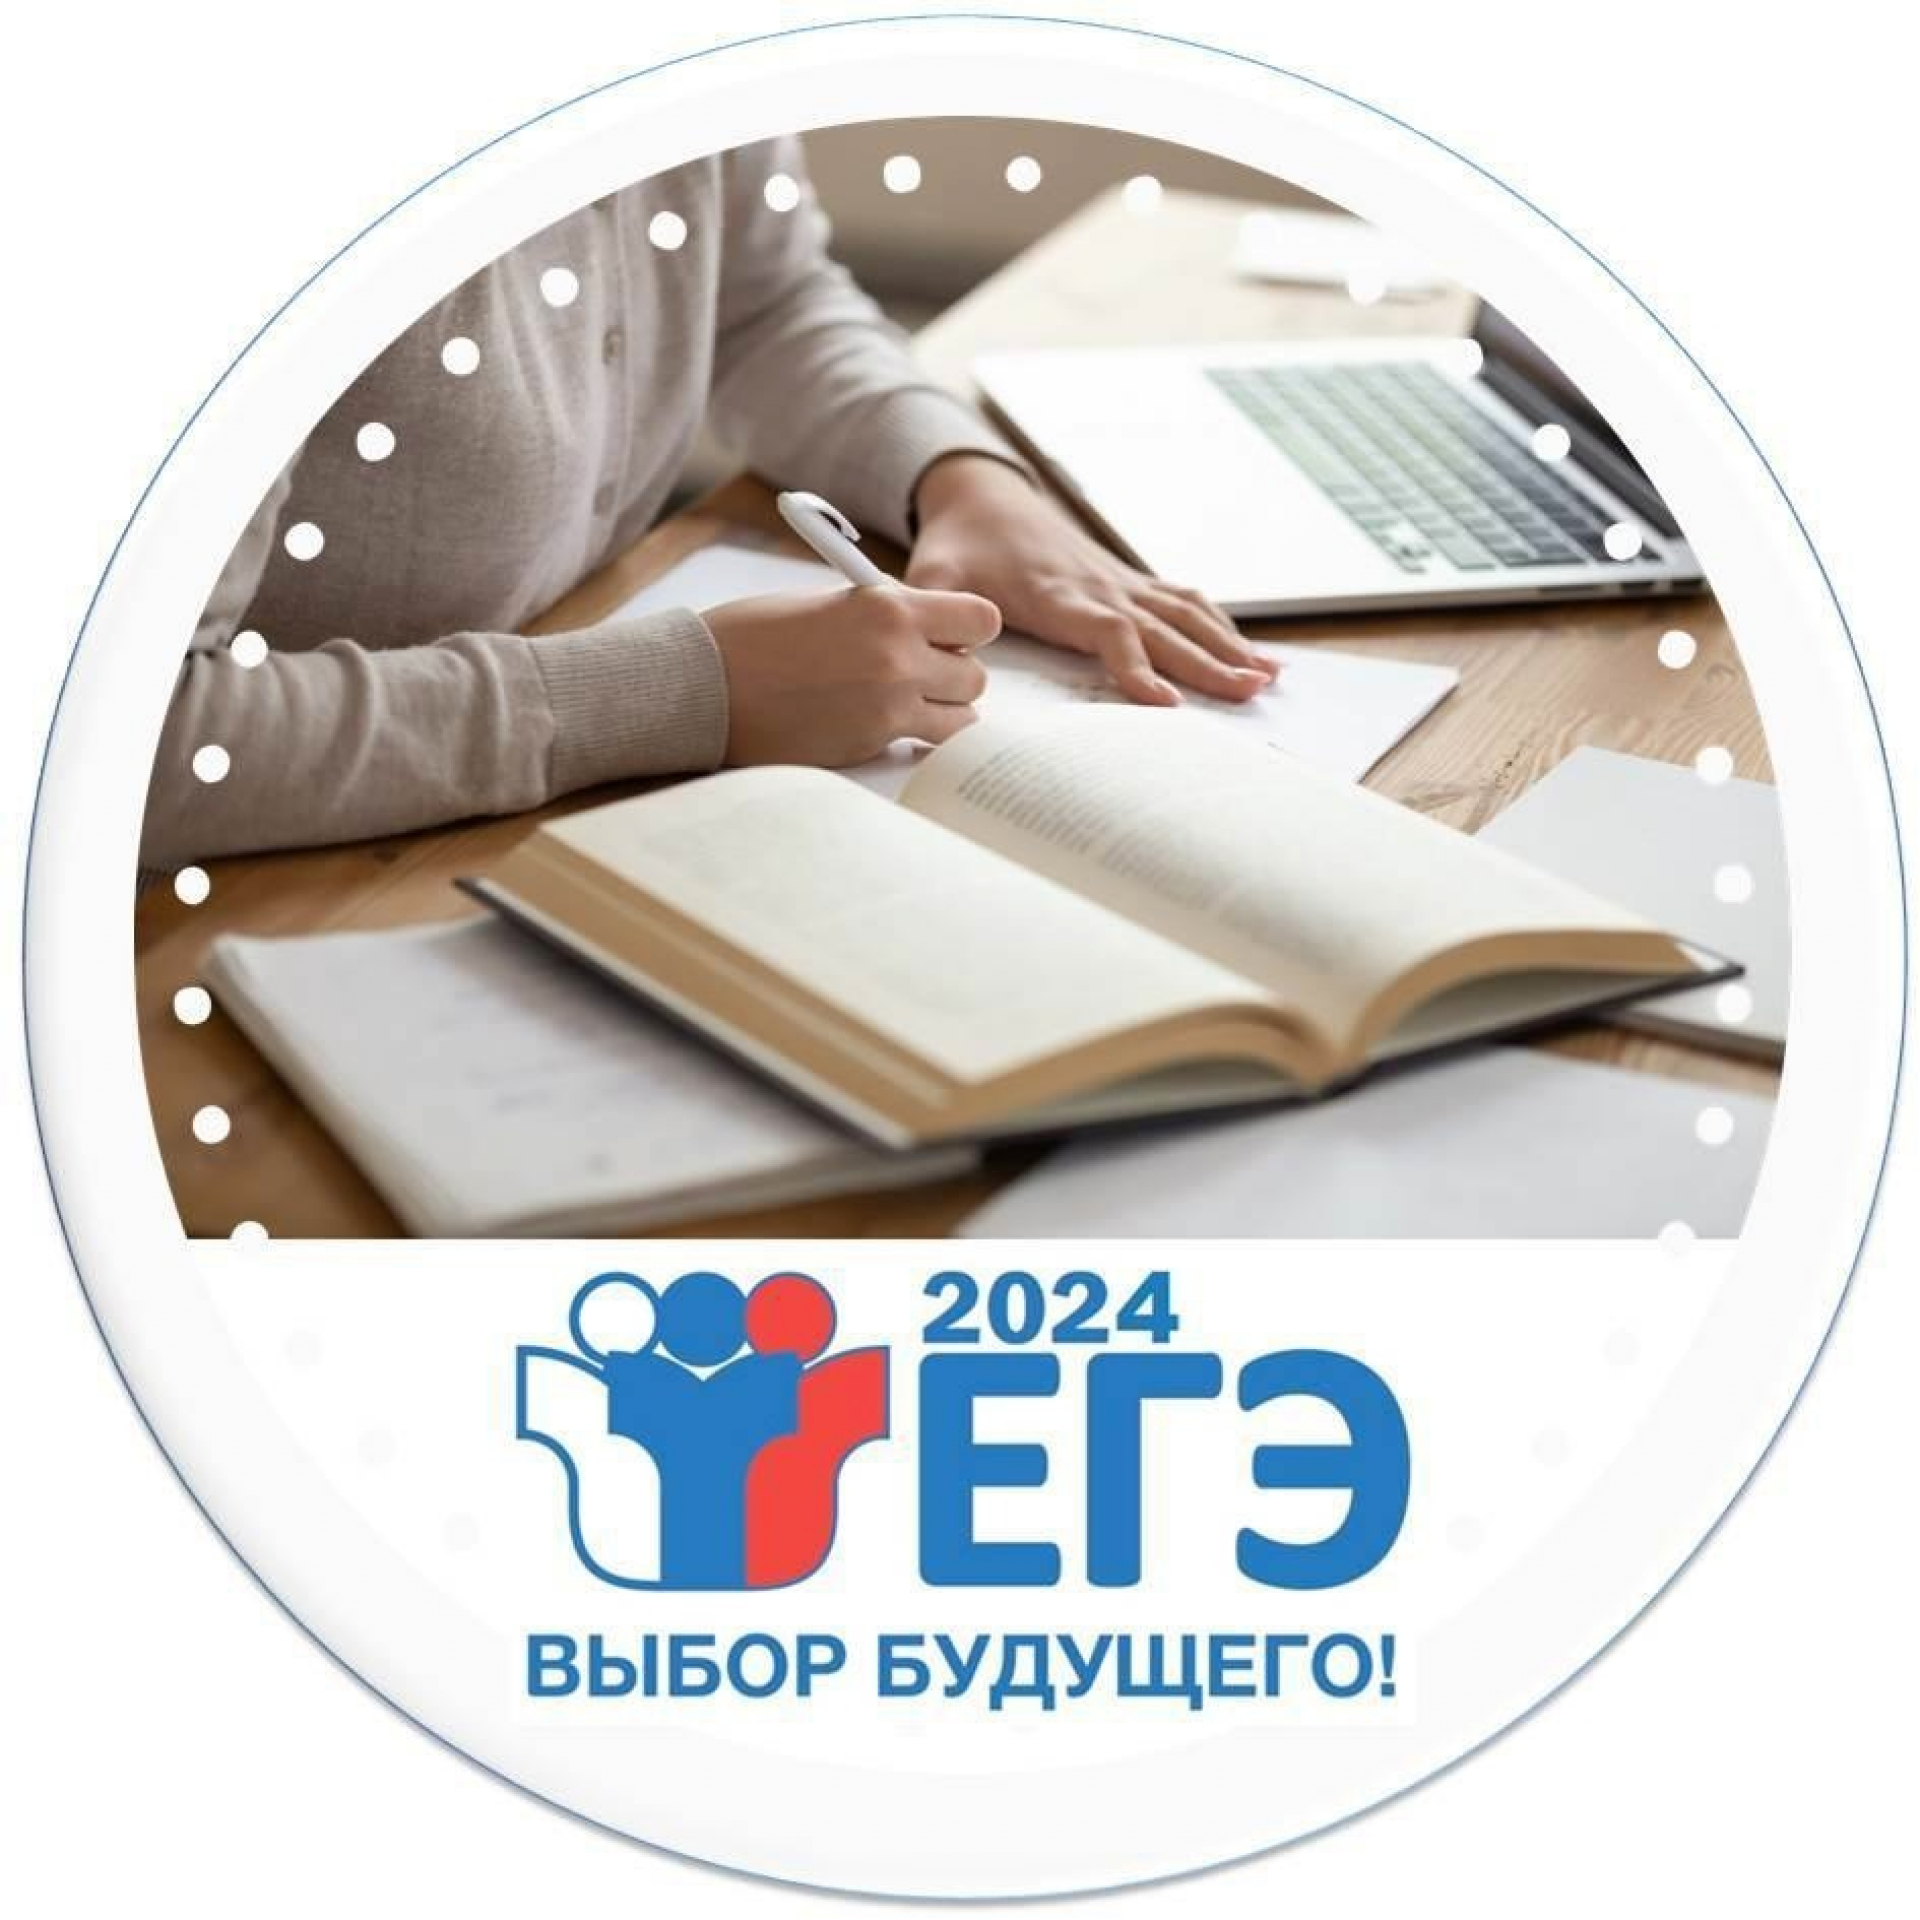 Региональная акция «Дни единого информационного пространства ЕГЭ в Югре в 2024 году».